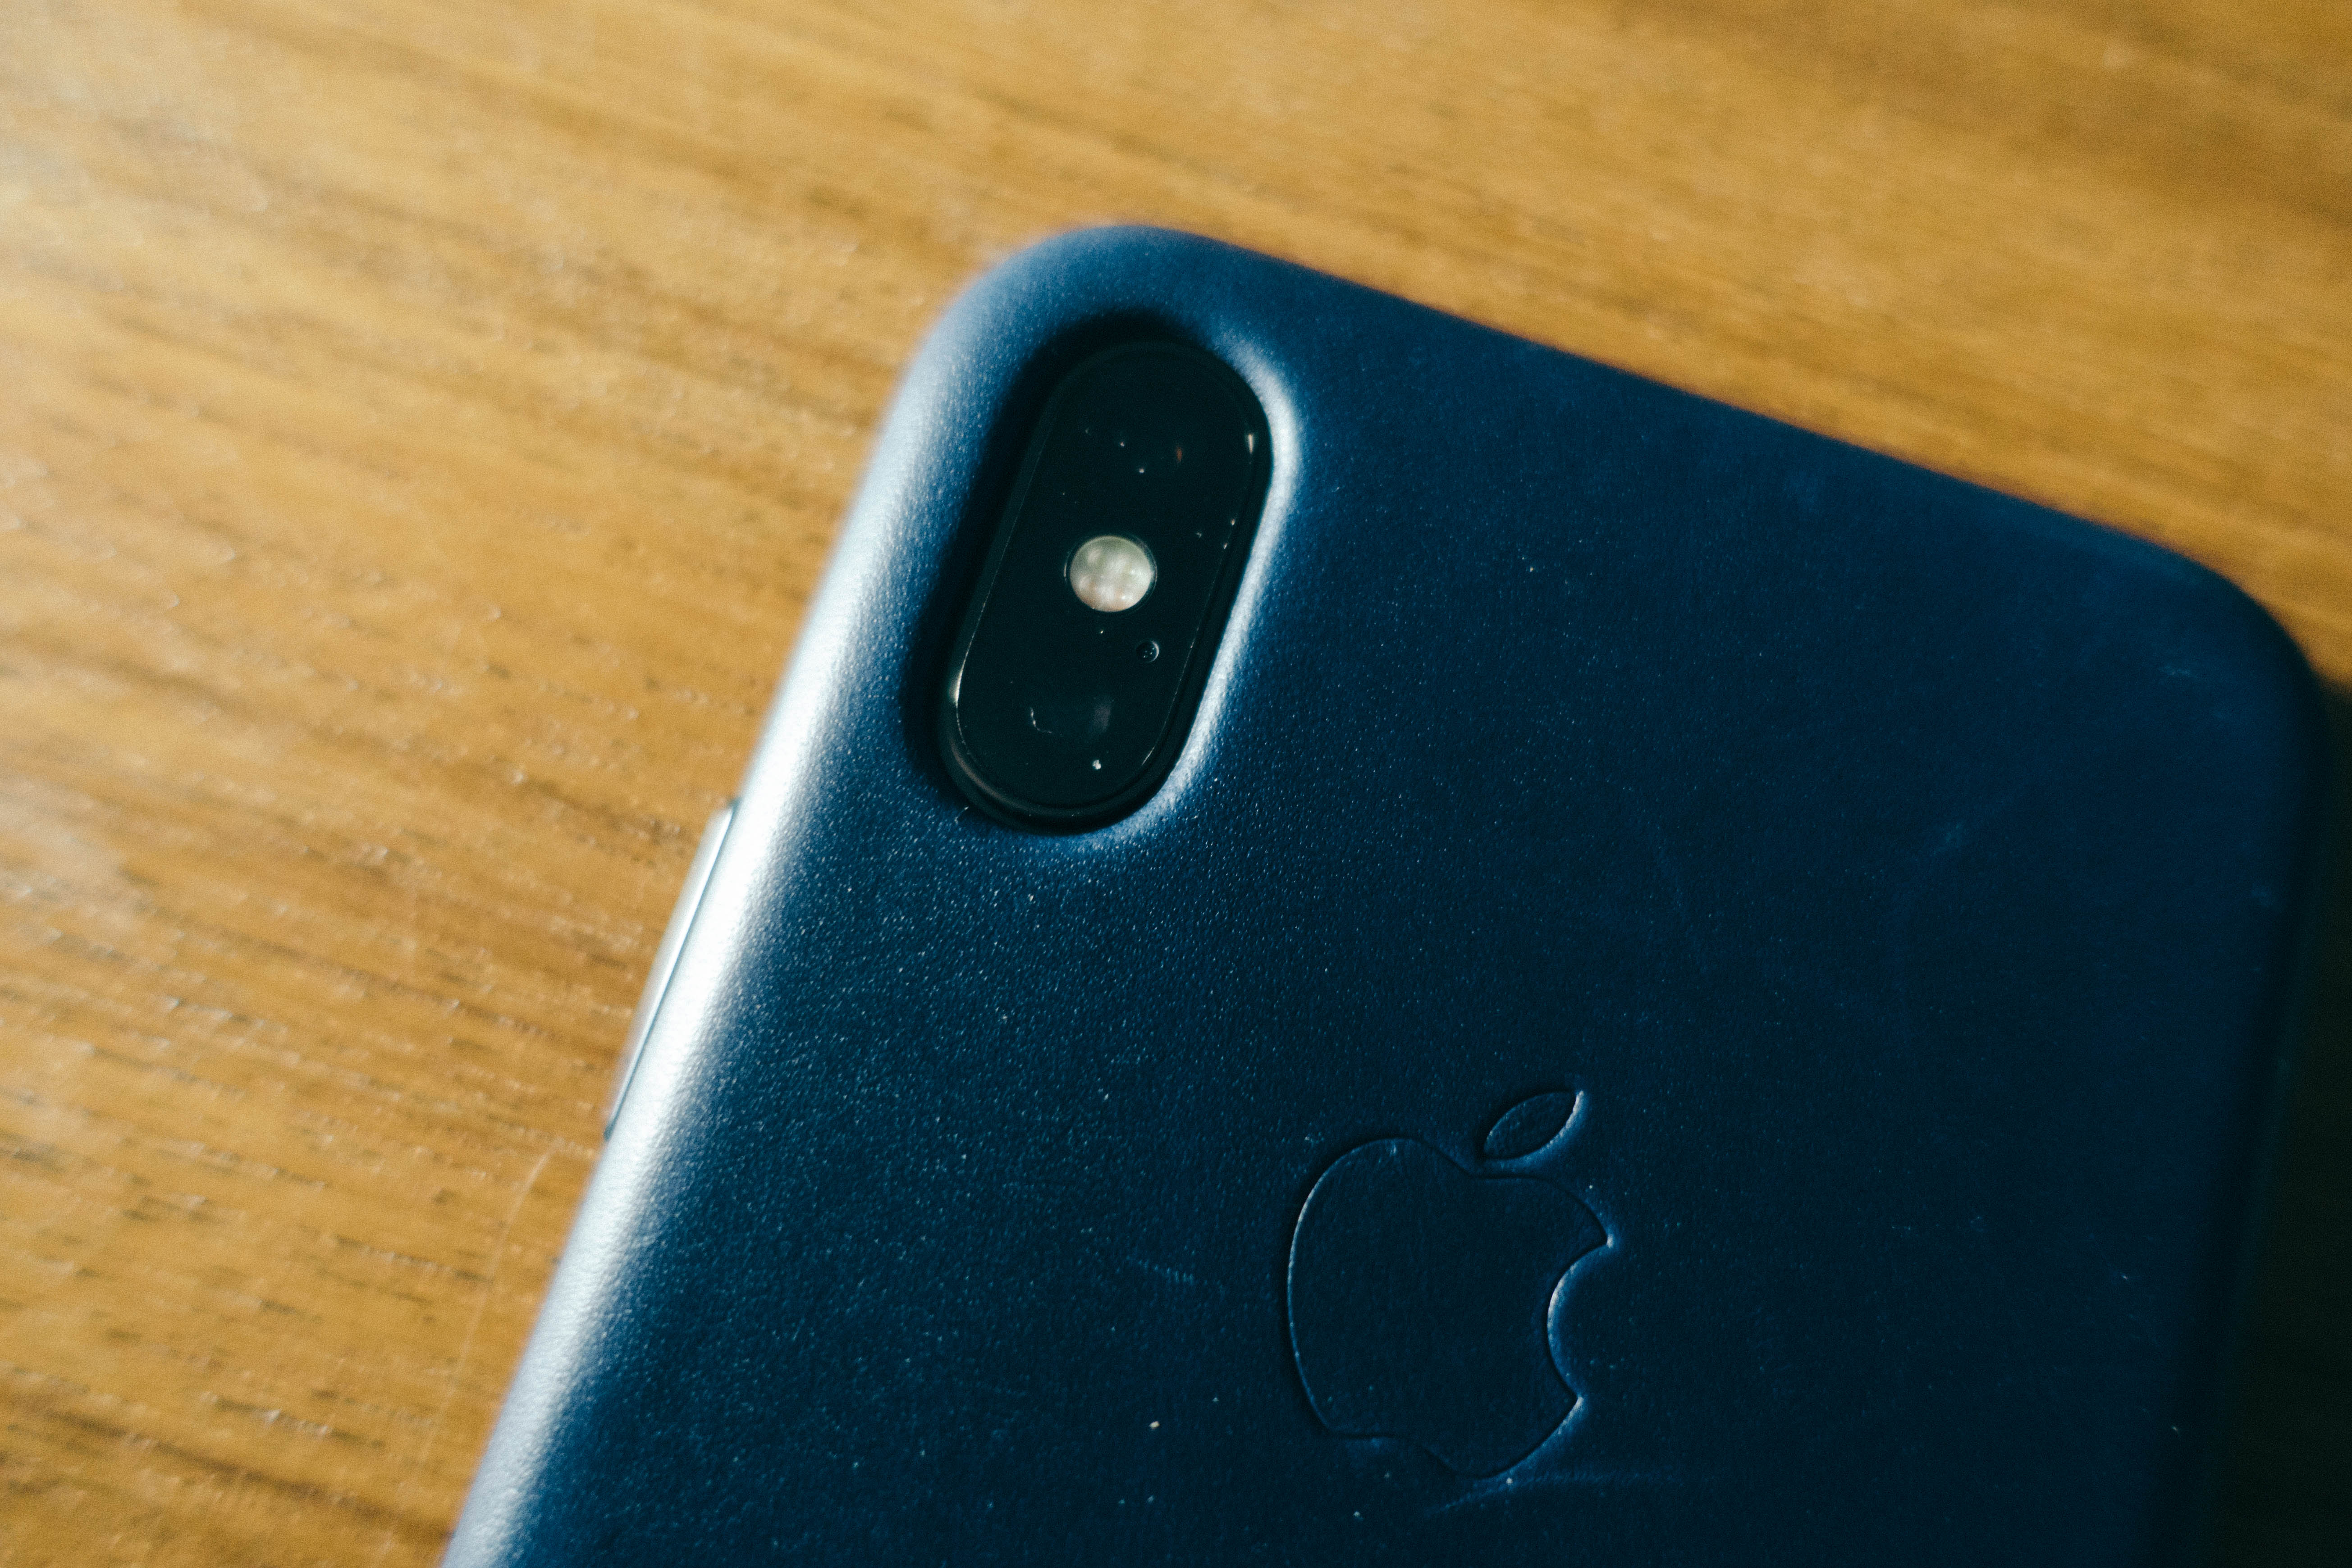 Iphone X 純正レザーケース 大人の色合いミッドナイトブルーは最高のデザイン 情報アンテナ